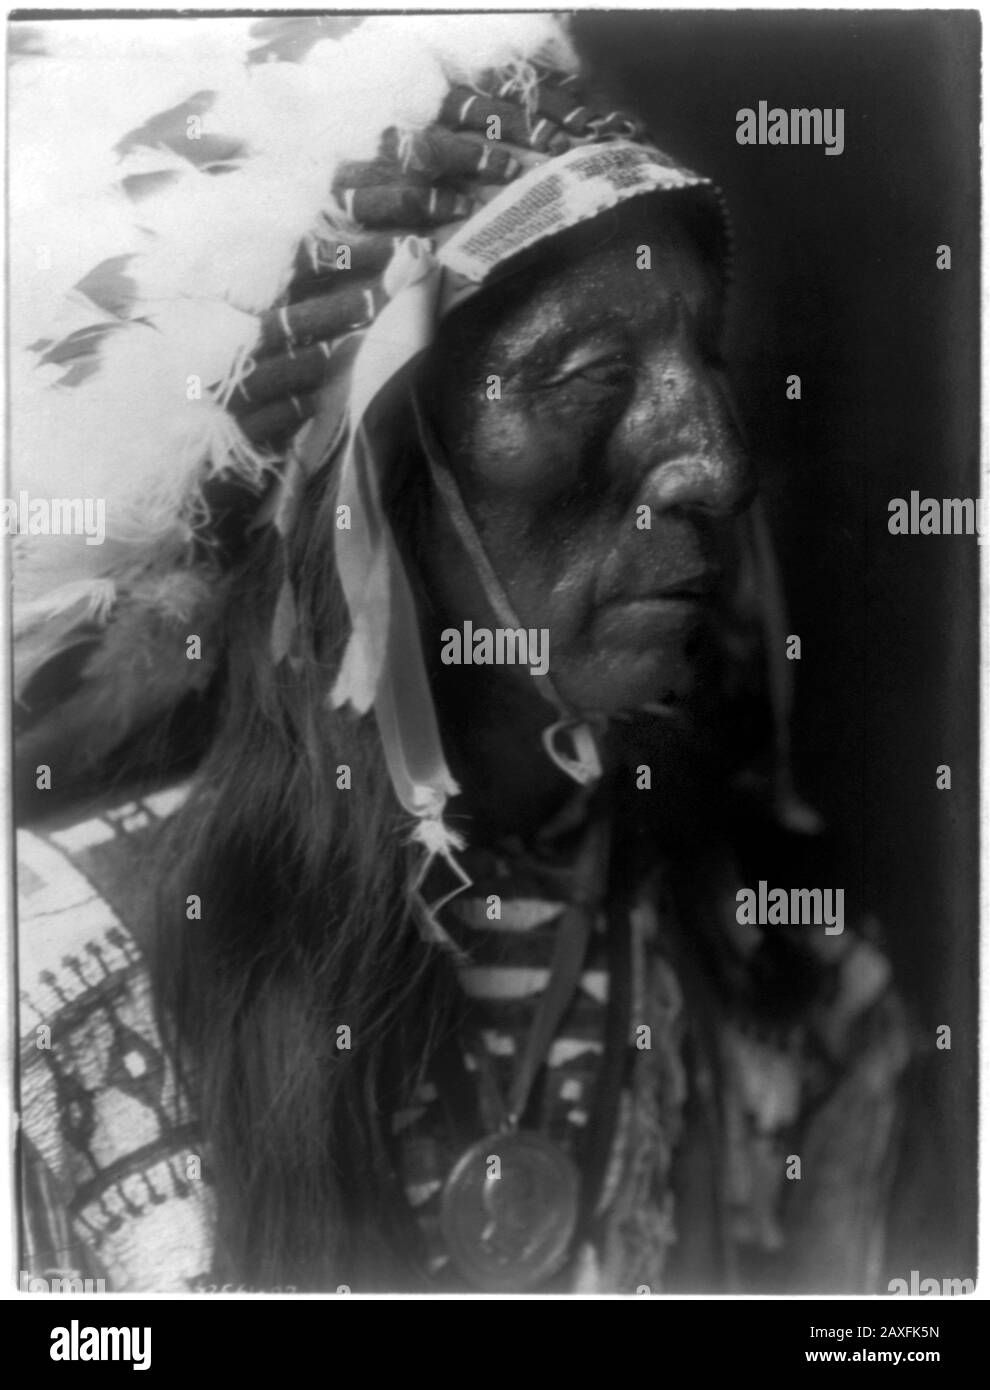 1907, États-Unis : le CHEF amérindien Jack Red Cloud d'Oglala Lakota ( Sioux ) ( 1822 – 1909 ) . Photo d'Edward S. CURTIS ( 1868 - 1952 ). - CAPO NUVOLA ROSSA - l'Indien de l'Amérique du Nord - HISTOIRE - foto storiche - warbonnet - foto storica - Indiens - INDIANI d'AMÉRIQUE - PELLEROSSA - natifs américains - Indiens d'Amérique du Nord - CAPO TRIBU' INDIANO - GUERRIERO - WARRIOR - portrait - ritratto - SELVAGGIO WEST - piuma - piume - plumes - STOCK © Archivio GBB / Banque D'Images